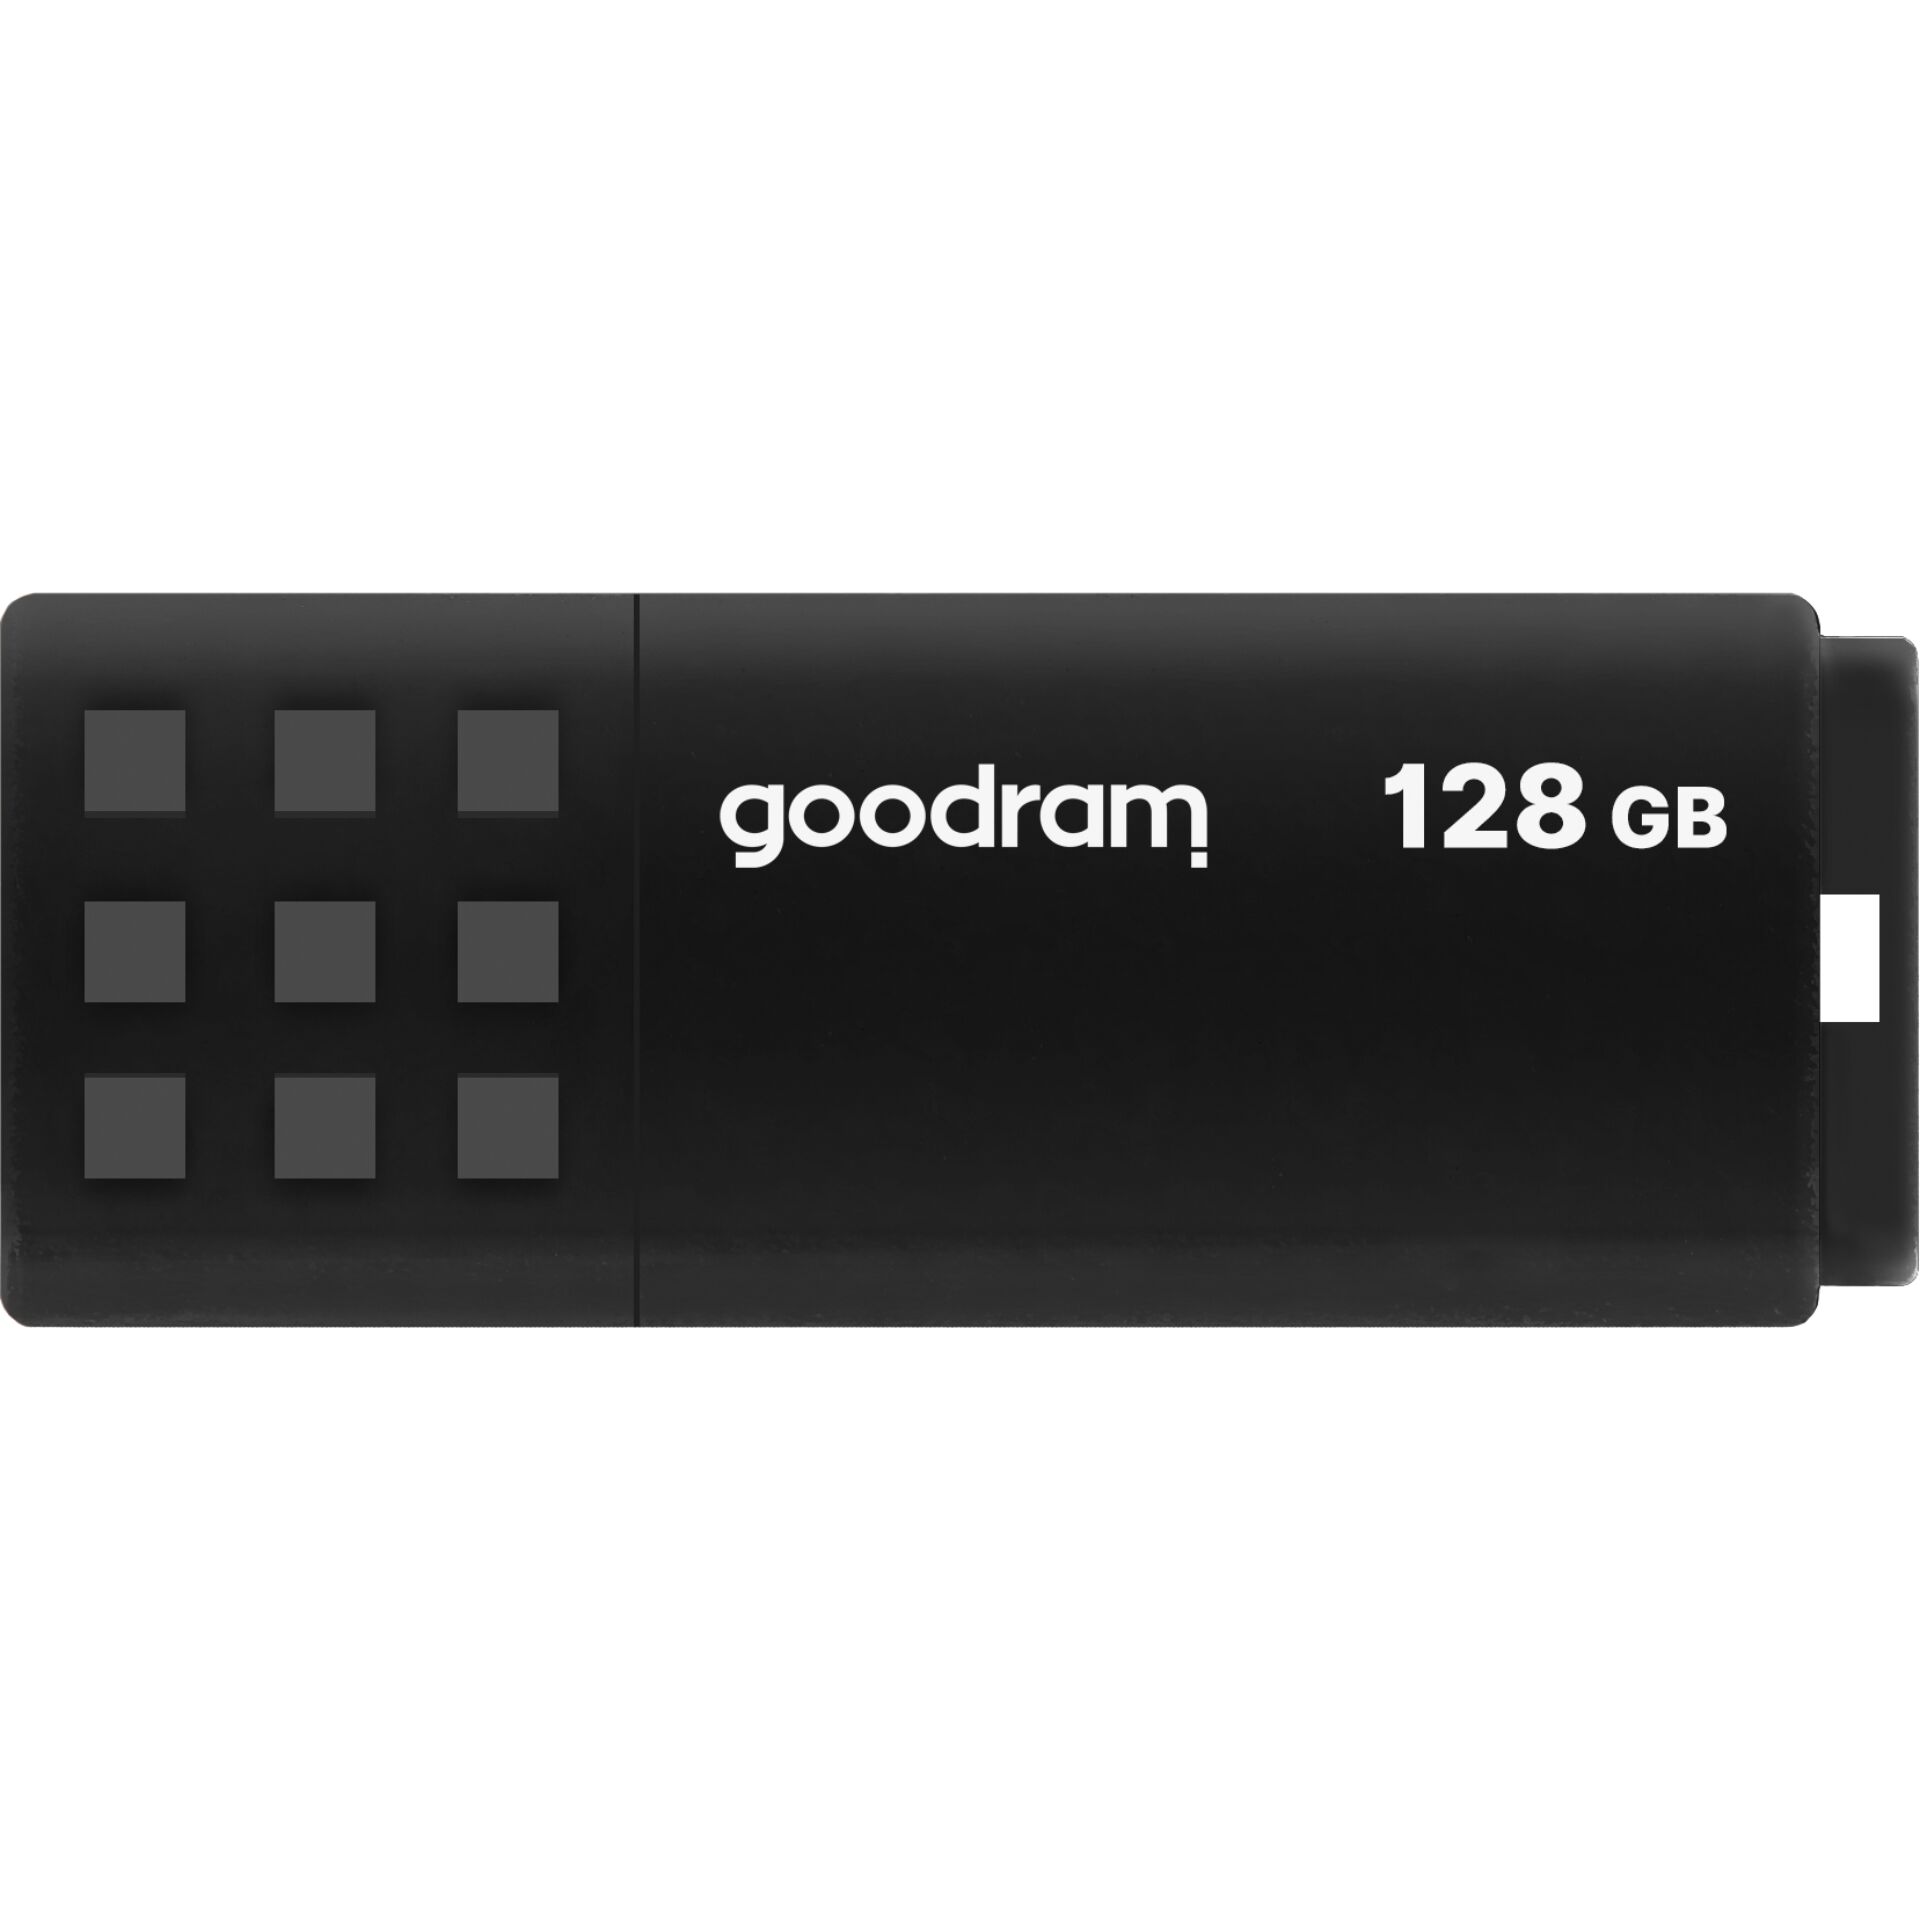 128 GB goodram UME3 schwarz USB-Stick, USB-A 3.0, lesen: 60MB/s, schreiben: 20MB/s